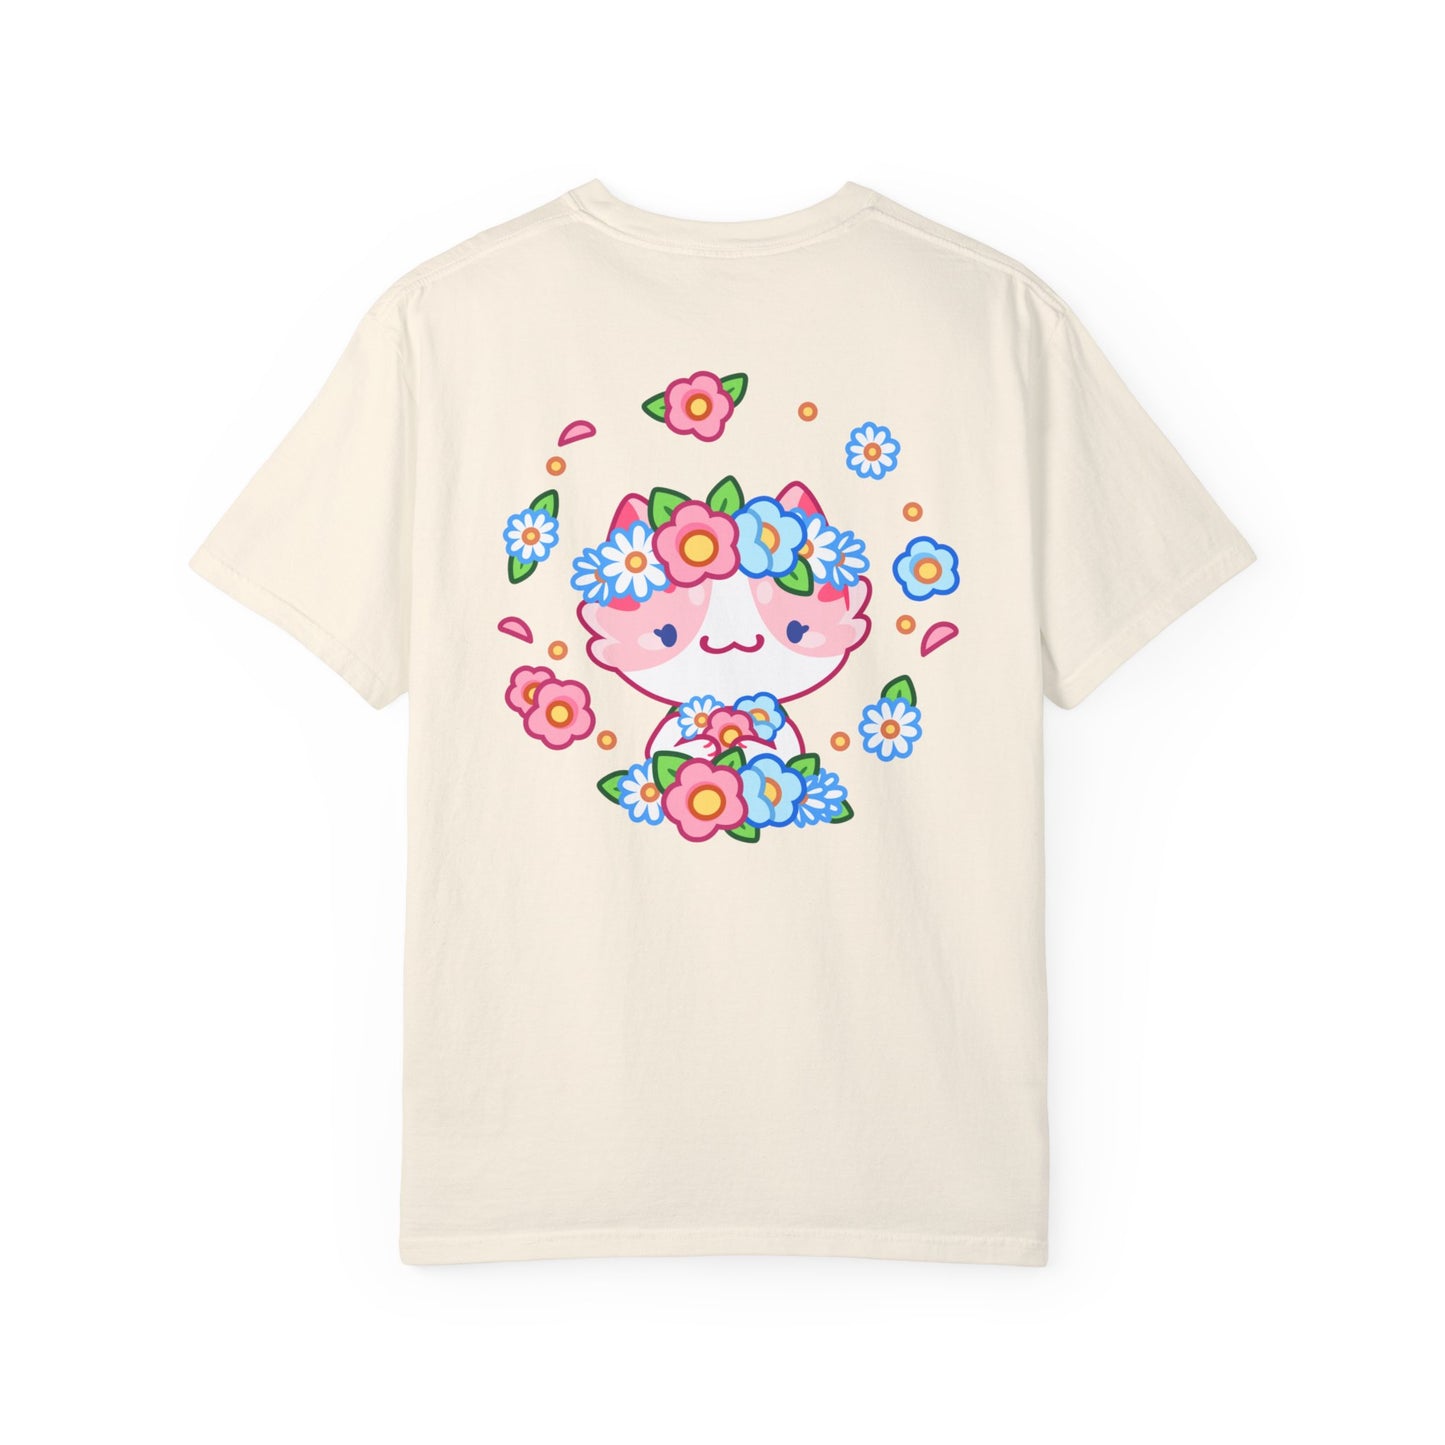 Flower Crown T-shirt